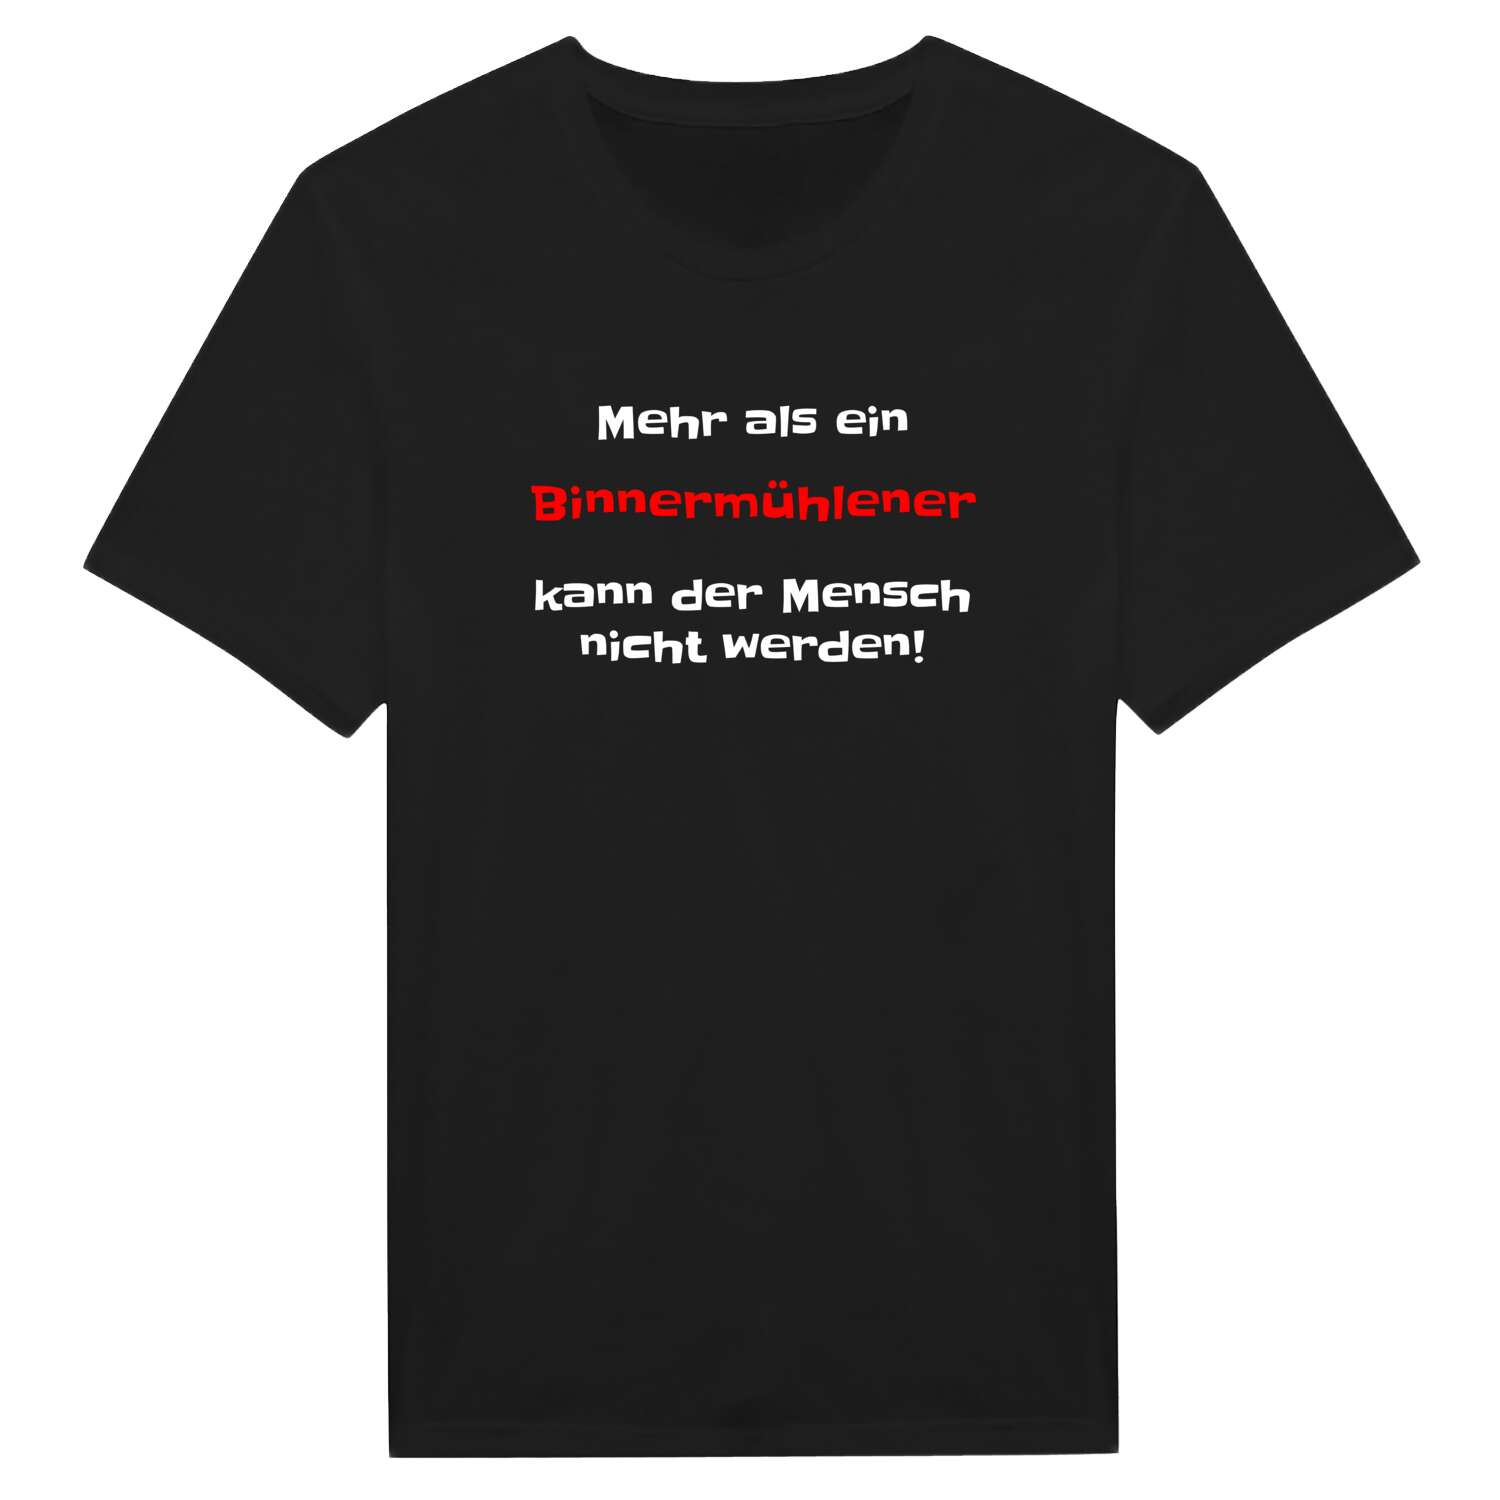 Binnermühle T-Shirt »Mehr als ein«